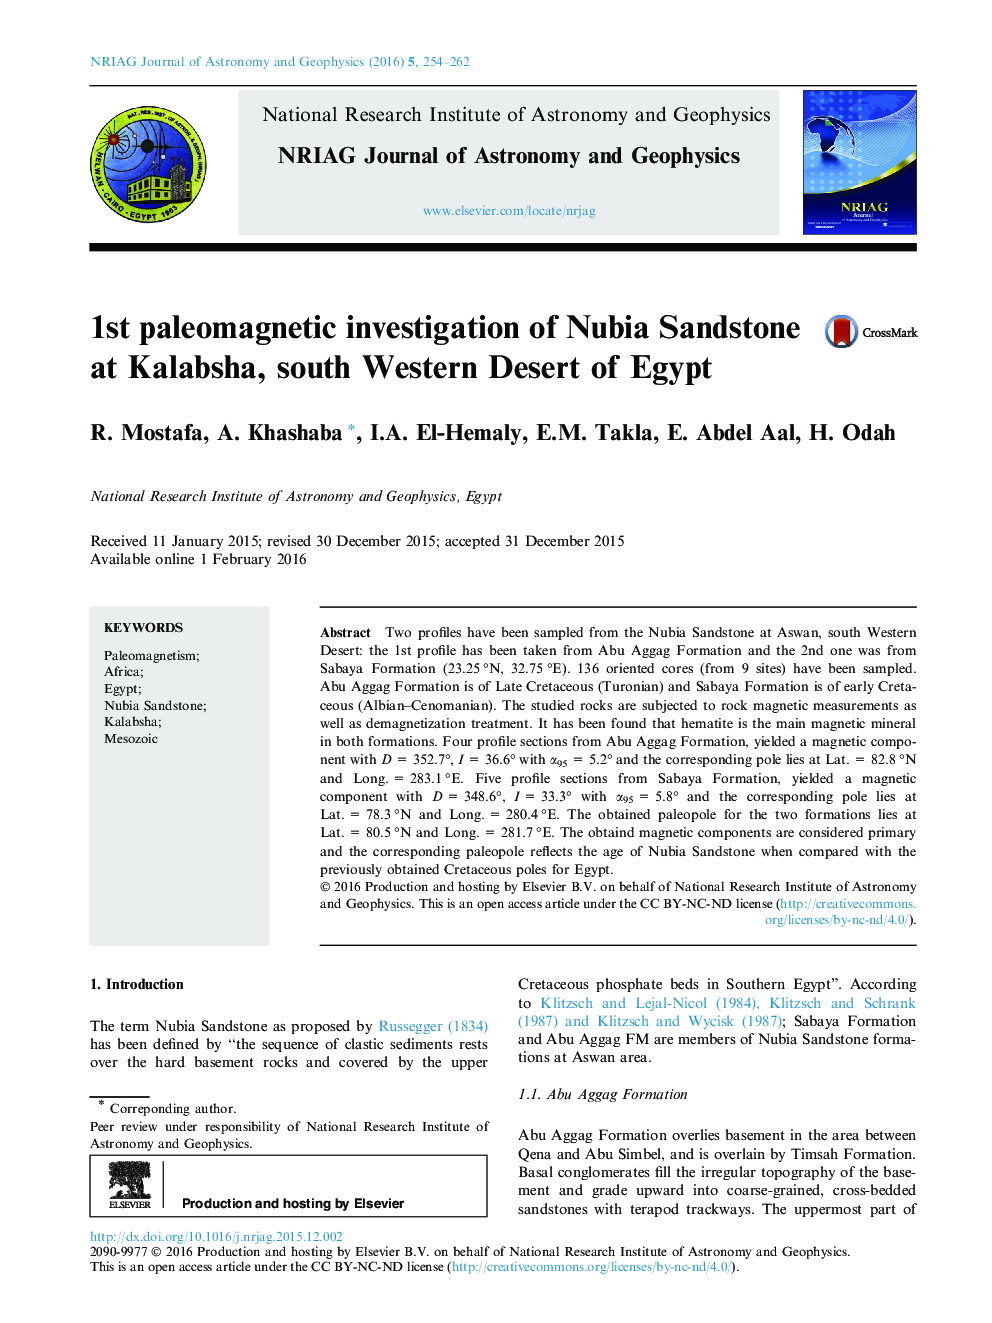 1st paleomagnetic investigation of Nubia Sandstone at Kalabsha, south Western Desert of Egypt 